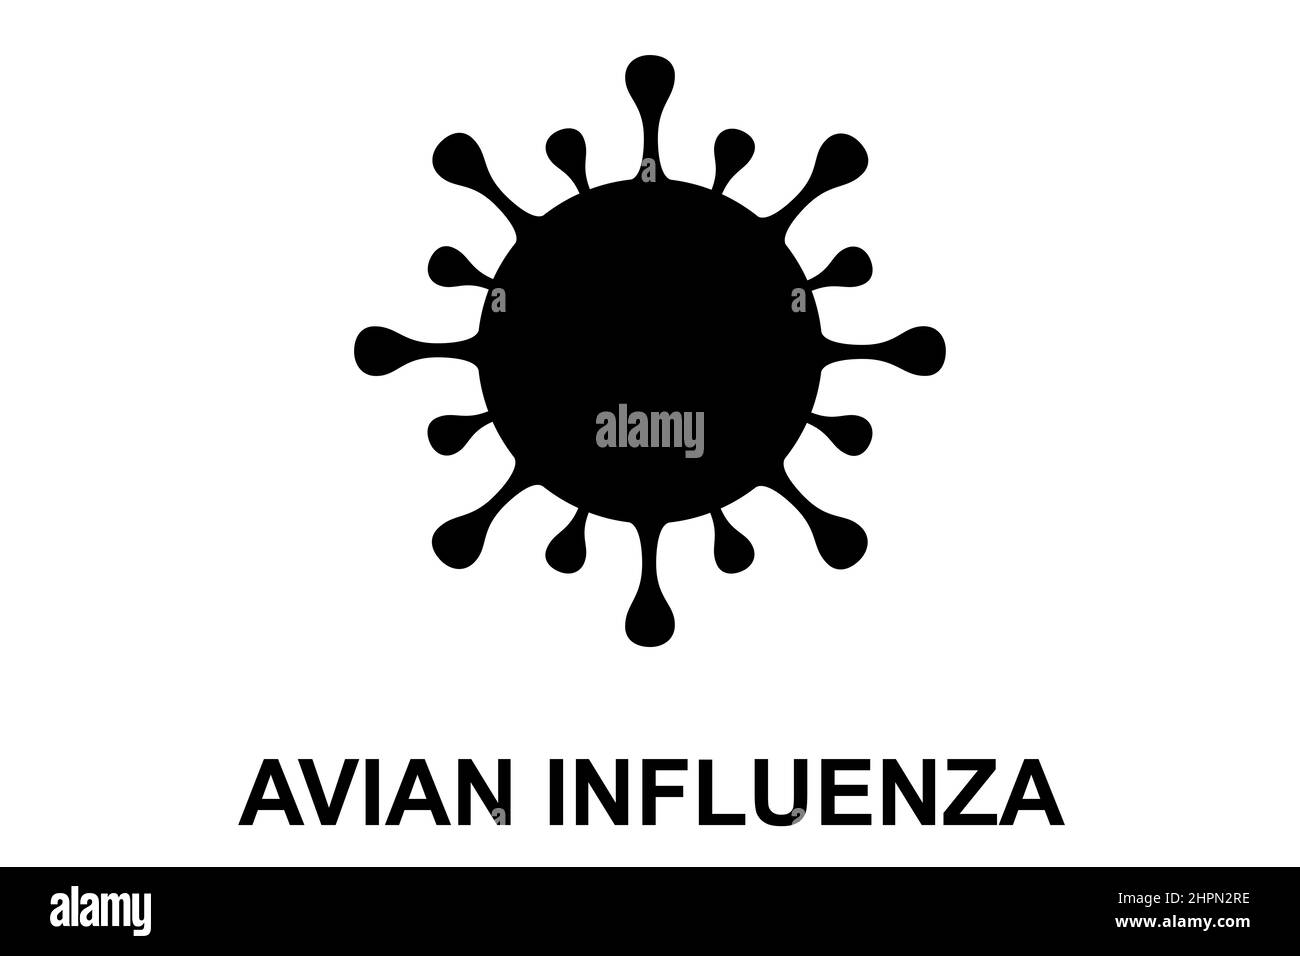 Influenza aviaria (H5N1). Illustrazione del virus dell'influenza aviaria. H5N1 malattia epidemica di influenza aviaria. Pericolo pandemico cinese. Virus da animali a persone Foto Stock